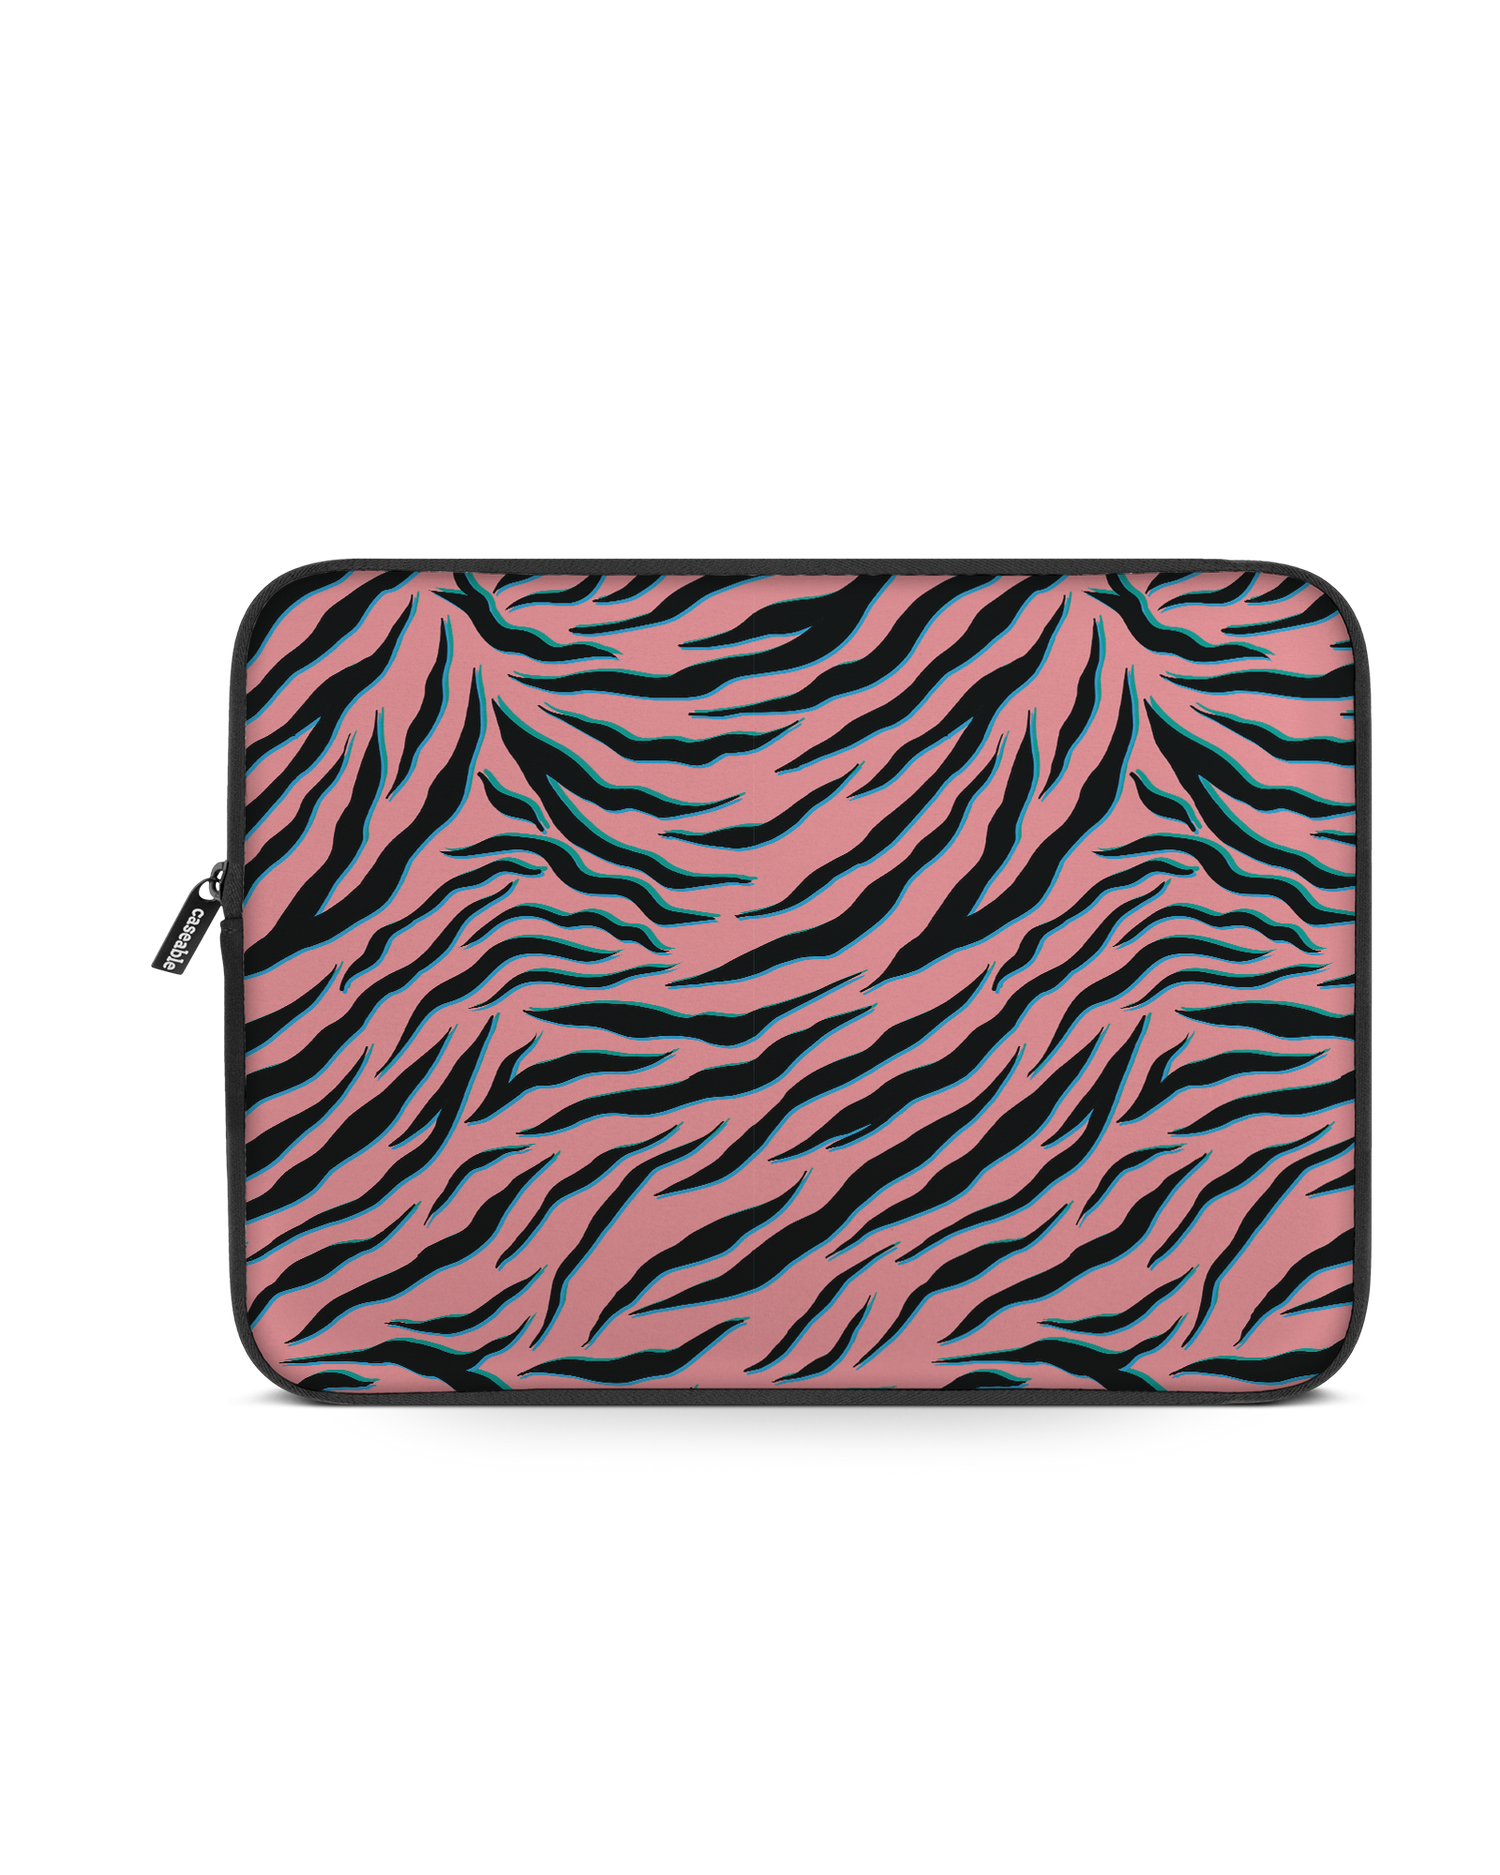 Pink Zebra Laptophülle 13 Zoll: Vorderansicht